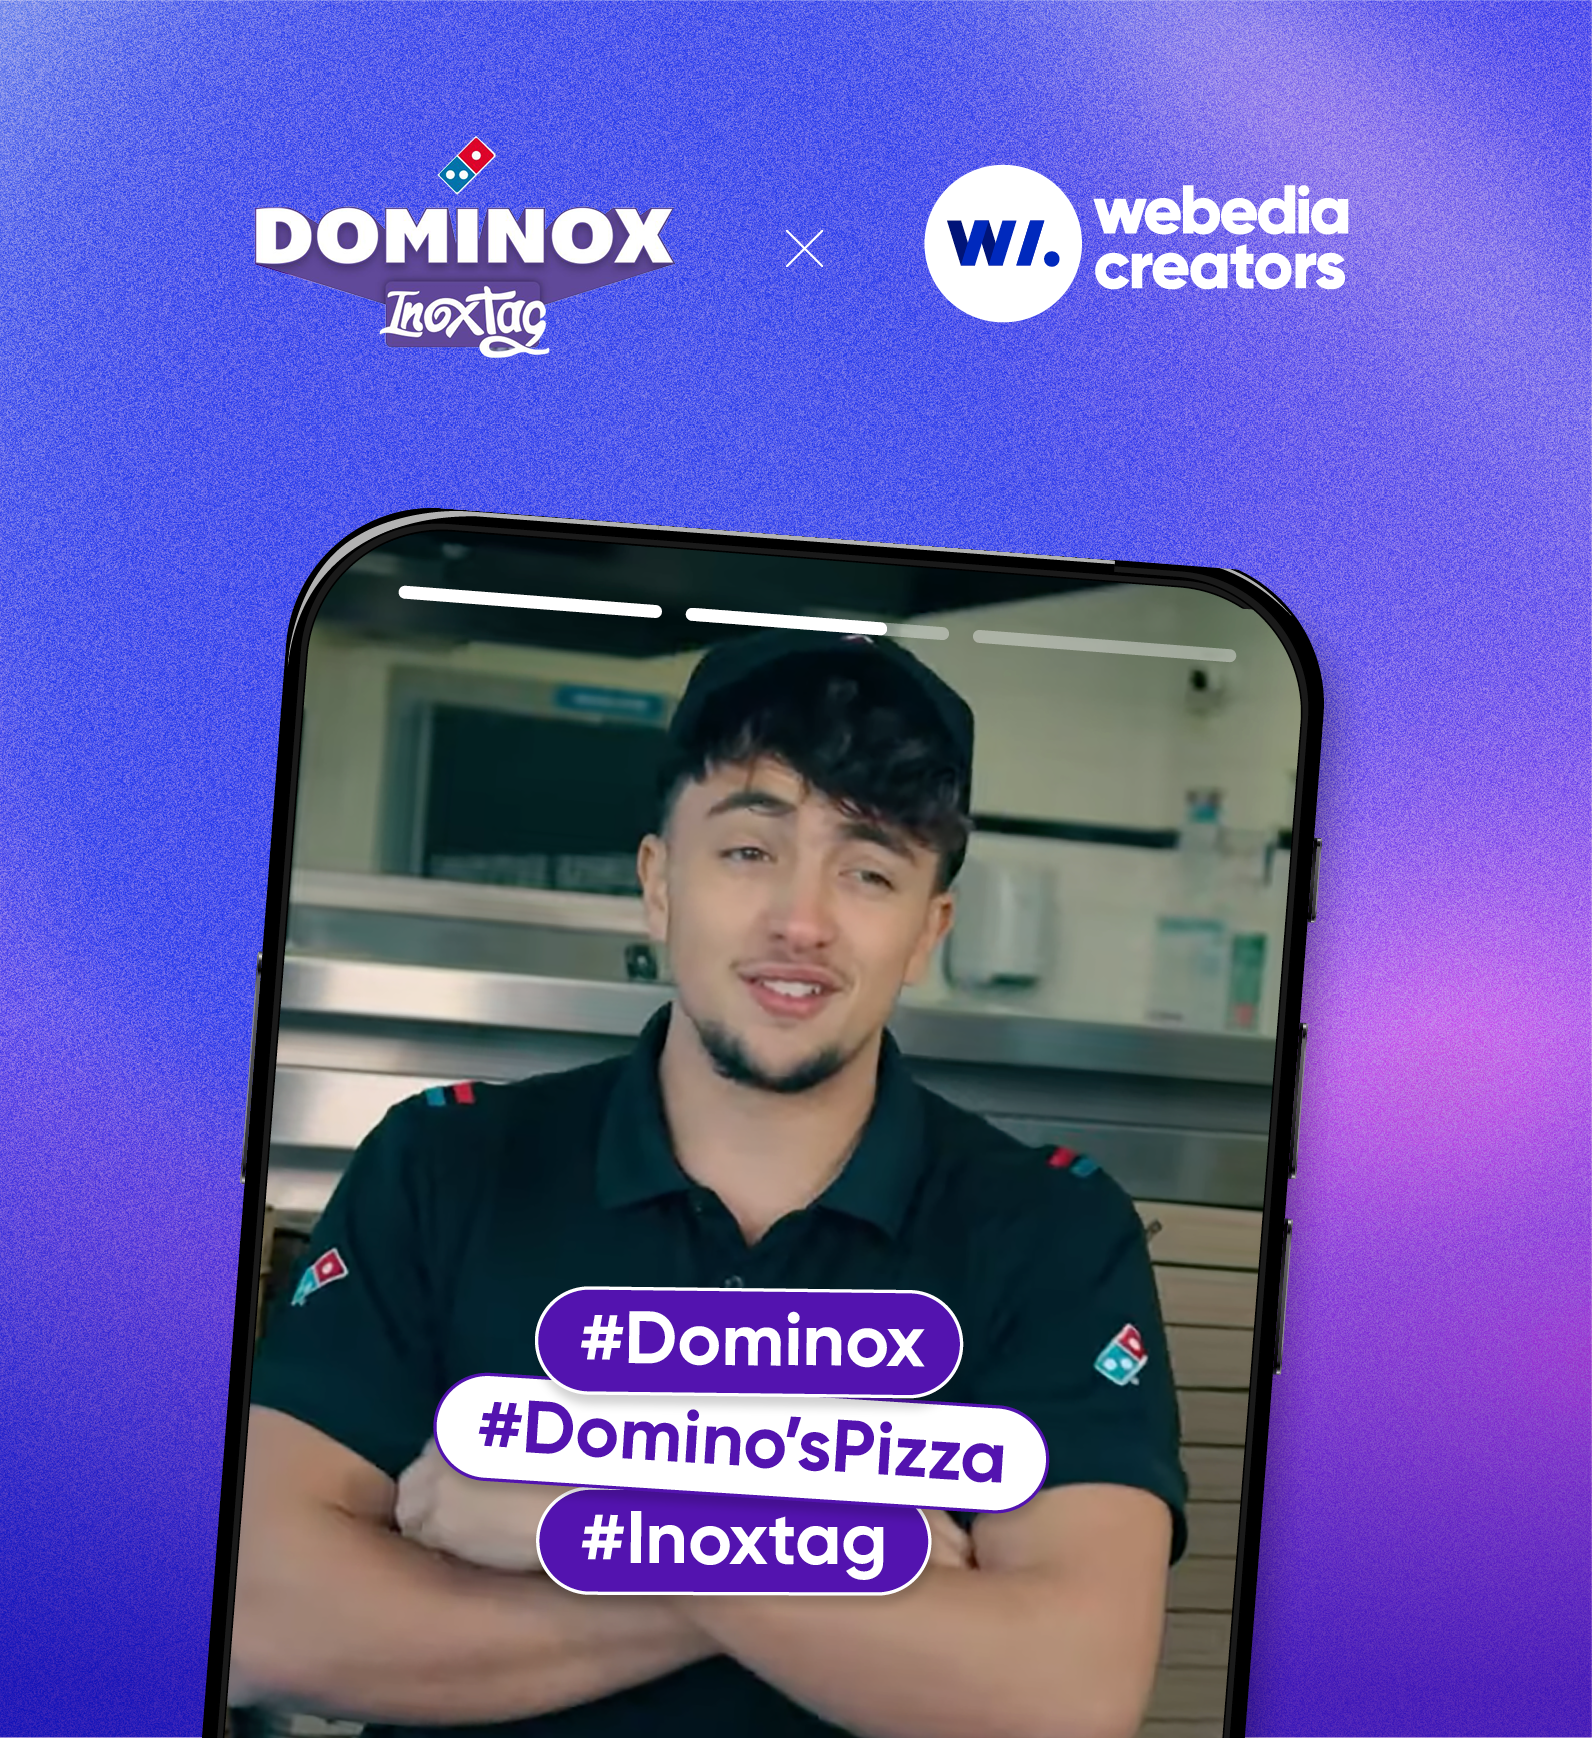 Dominos X Inoxtag, la pizza dominox